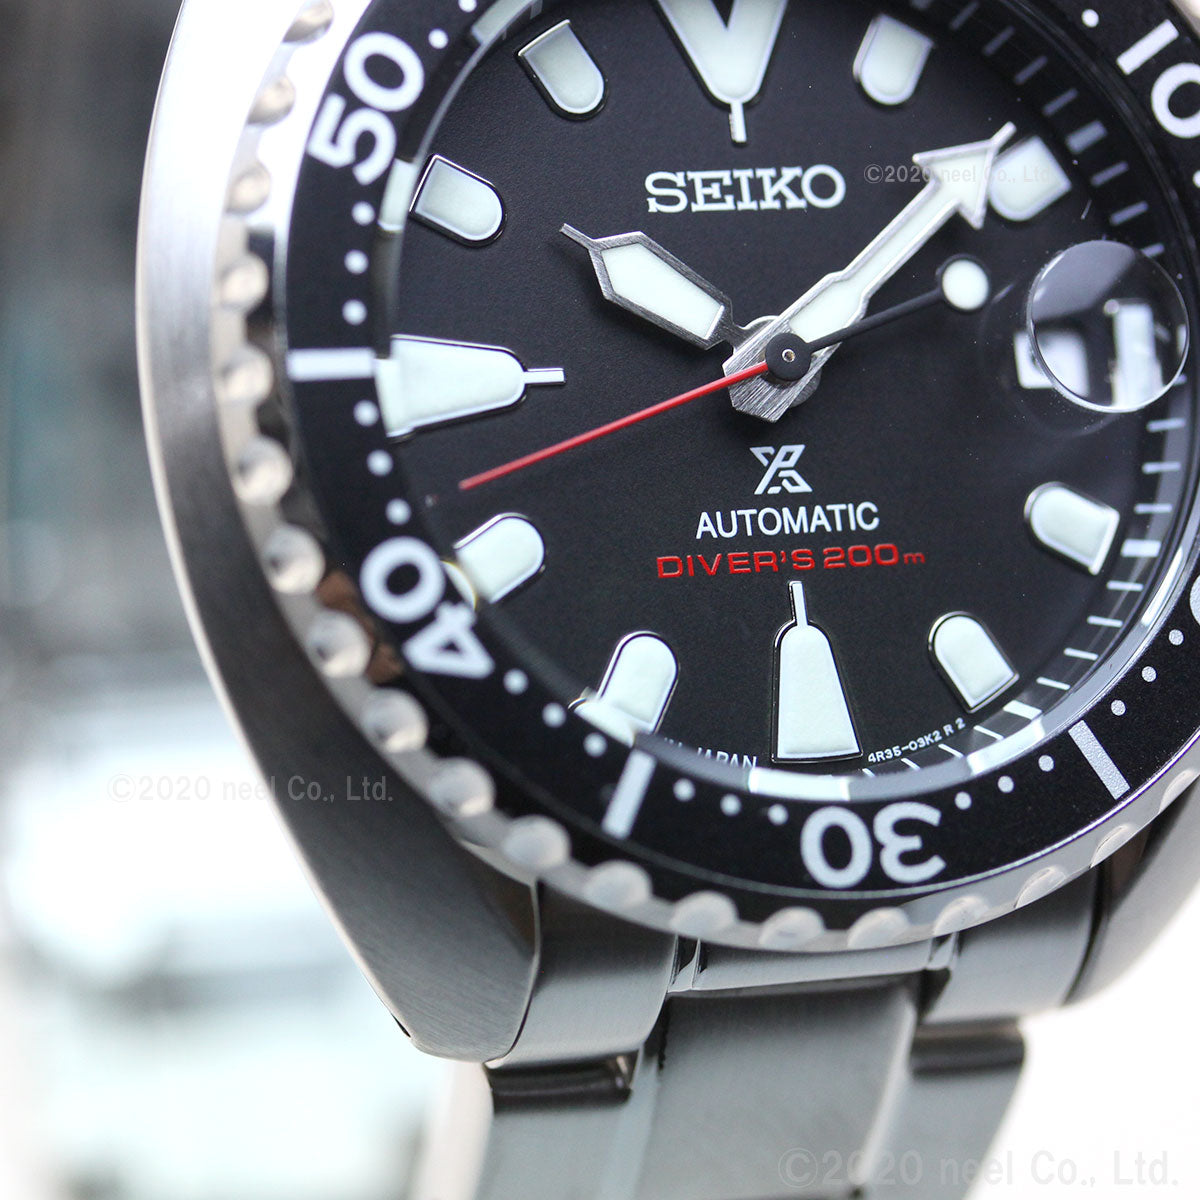 セイコー プロスペックス ミニタートル ダイバースキューバ SEIKO PROSPEX メカニカル 自動巻き ネット流通限定モデル 腕時計 メンズ SBDY085